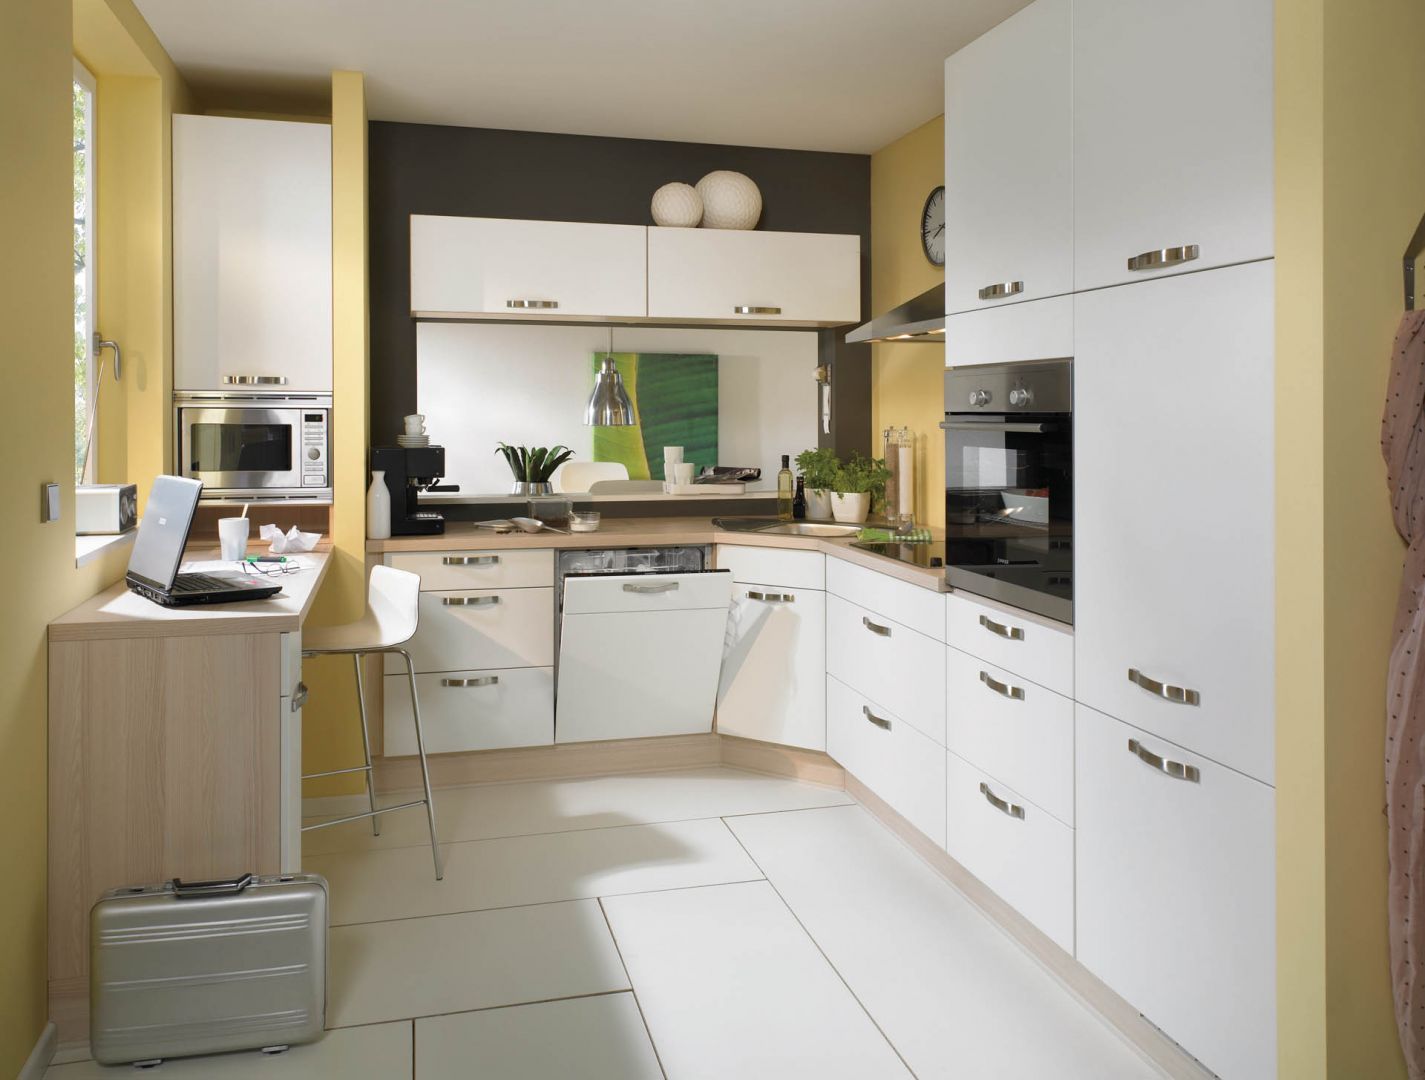 Nawet w najmniejszej kuchni sprawdzi się wysoka zabudowa. Można w niej przecież ukryć lodówkę i sprzęty do pieczenia. Na zdjęciu model Senso 404. Fot. Nobilia